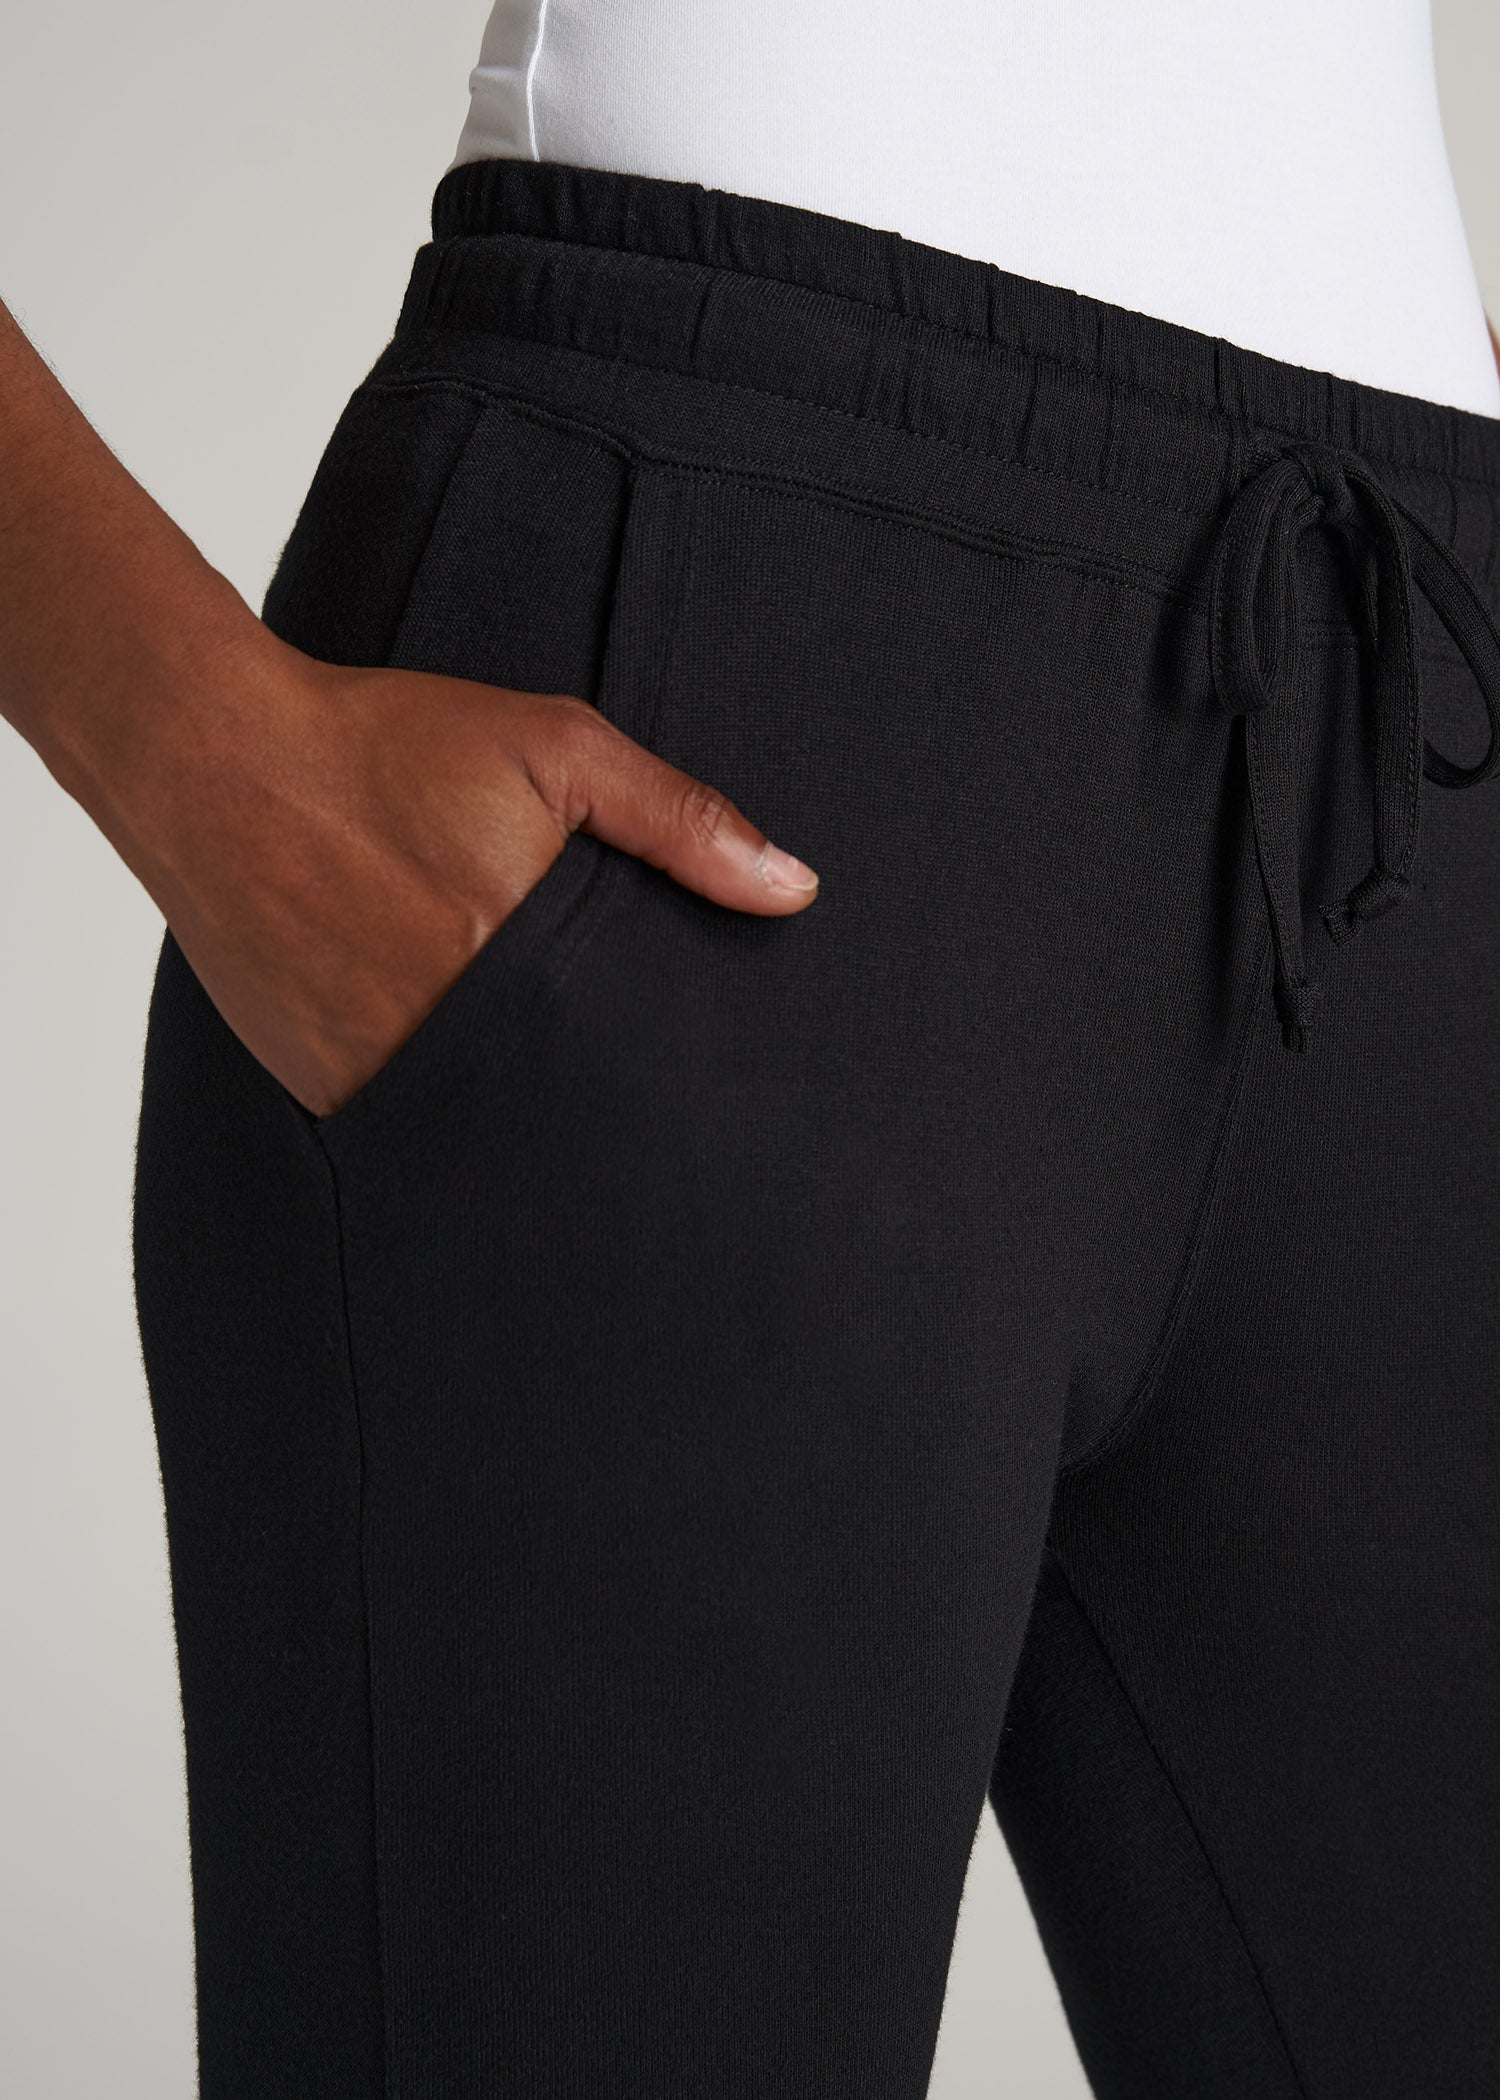 Open-Bottom Cozy PJ Lounge Pants for Tall Women in Black